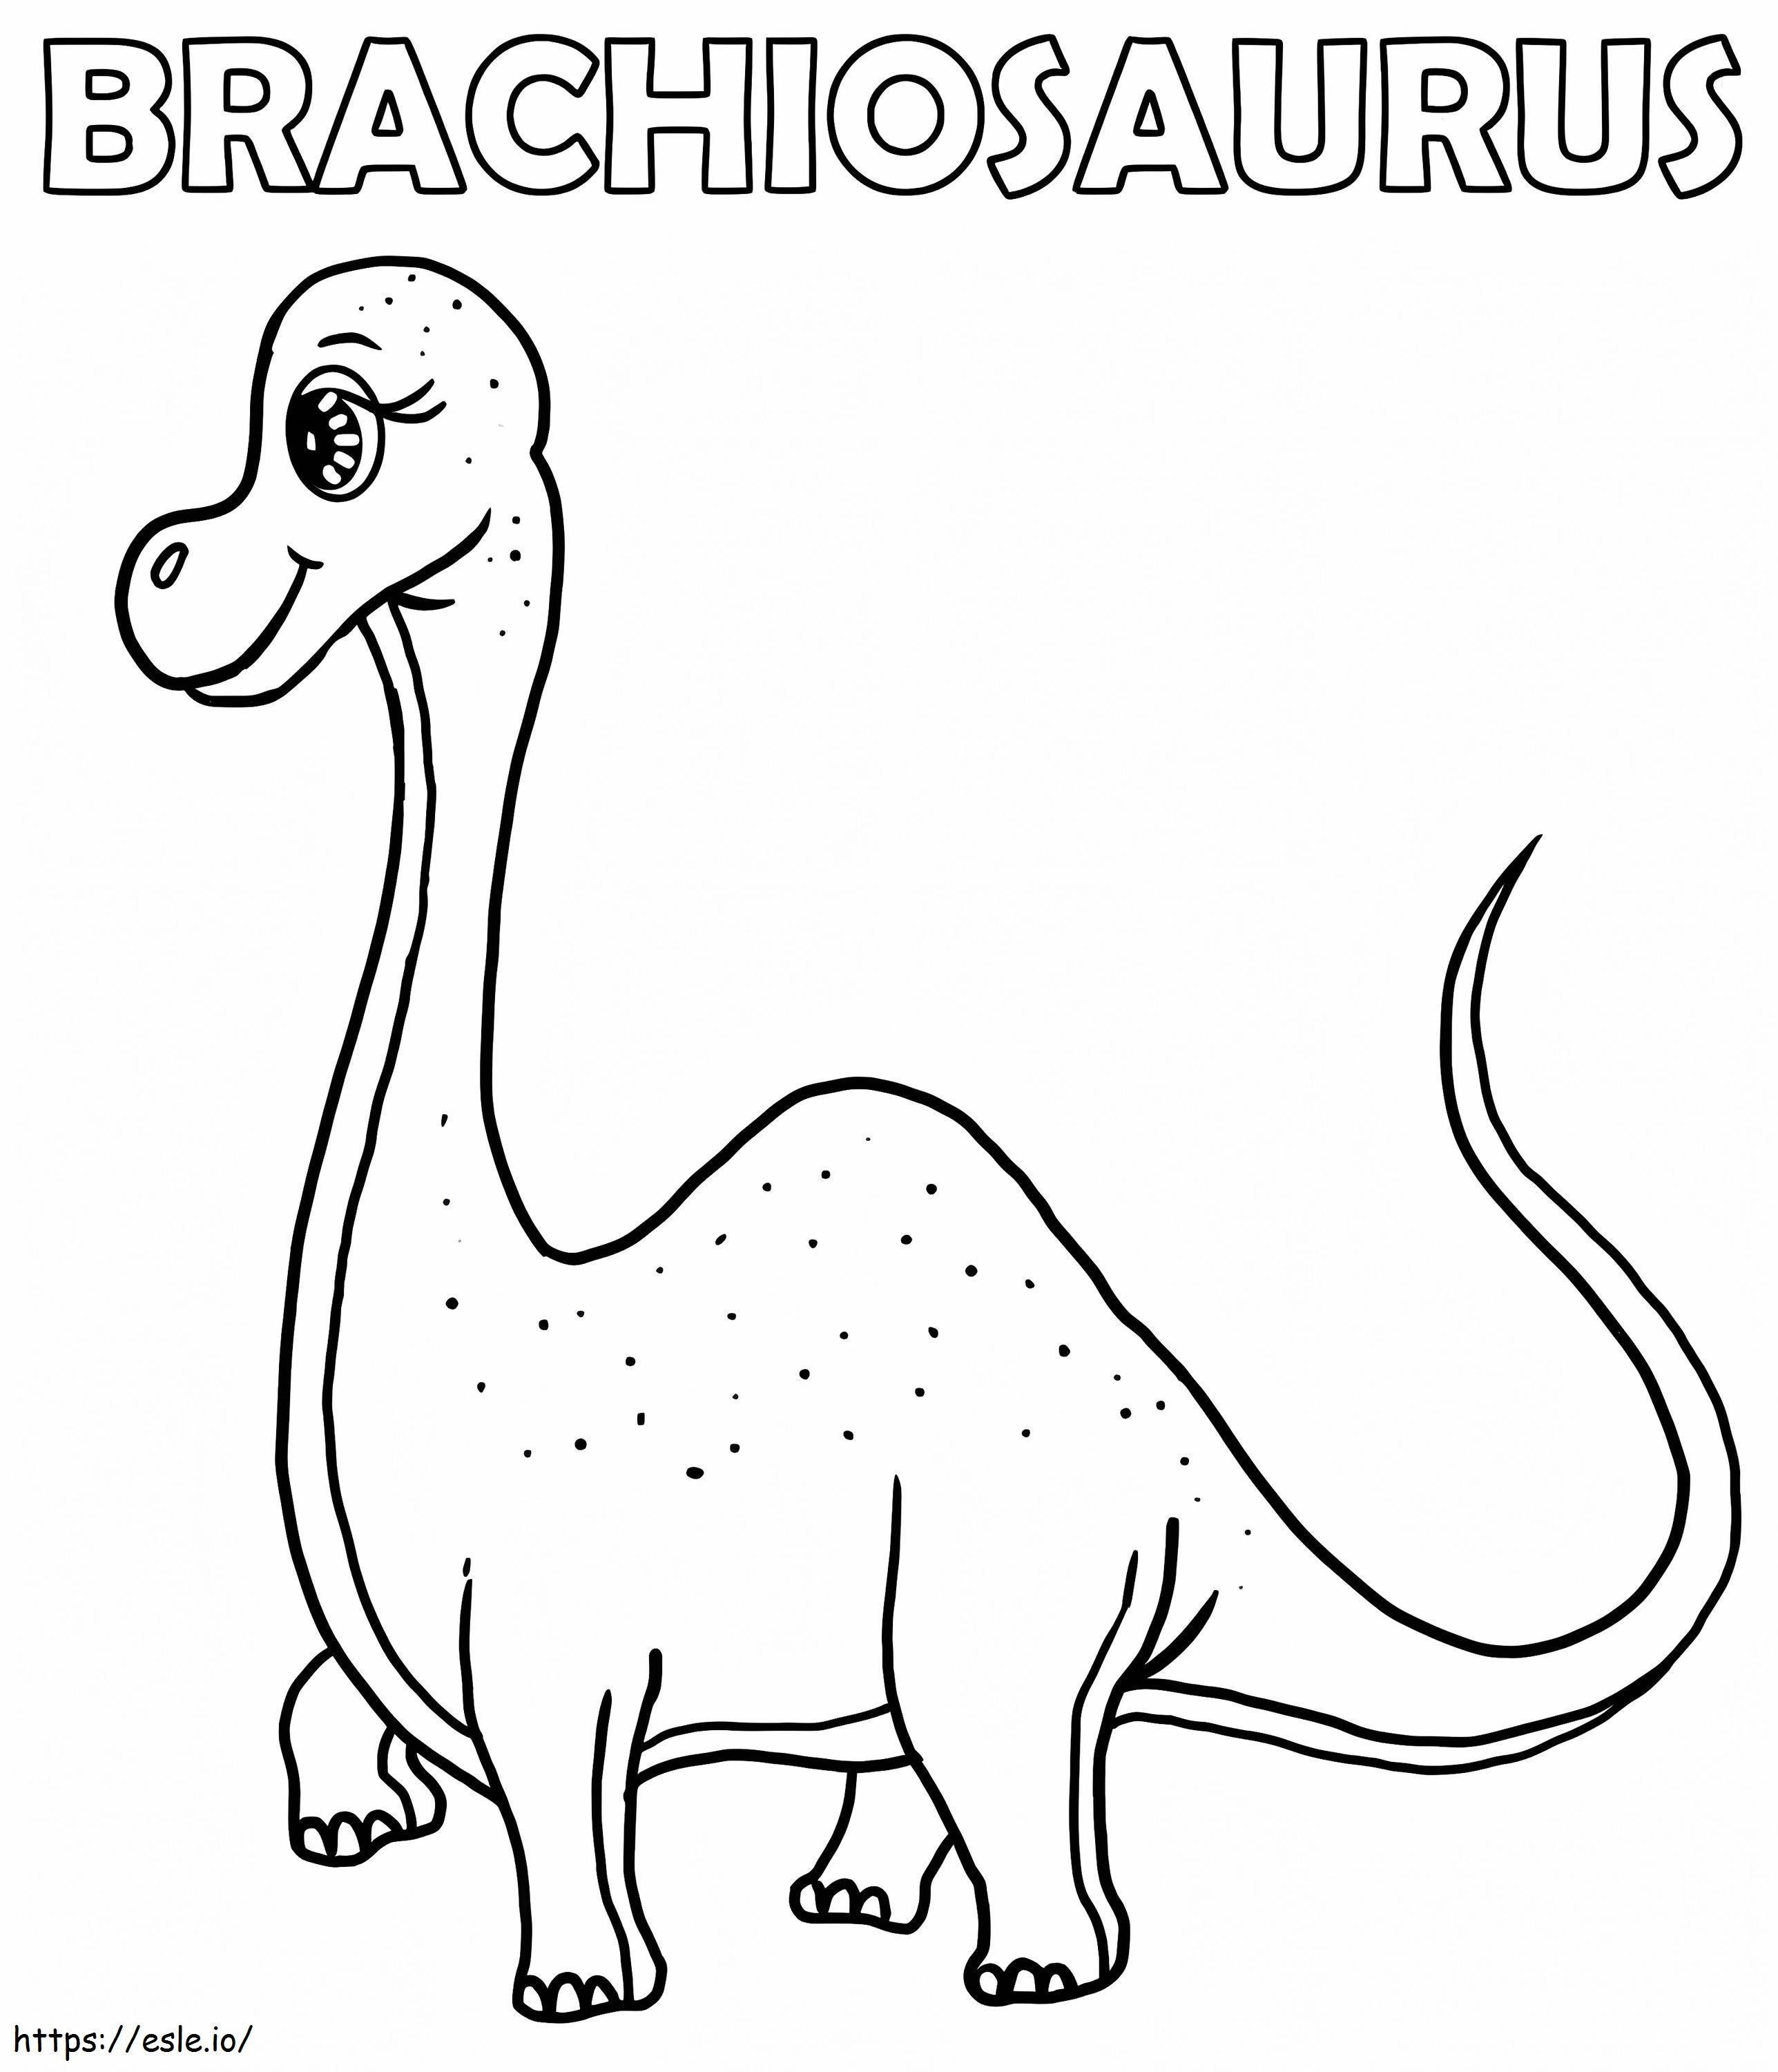 Adorabile brachiosauro da colorare